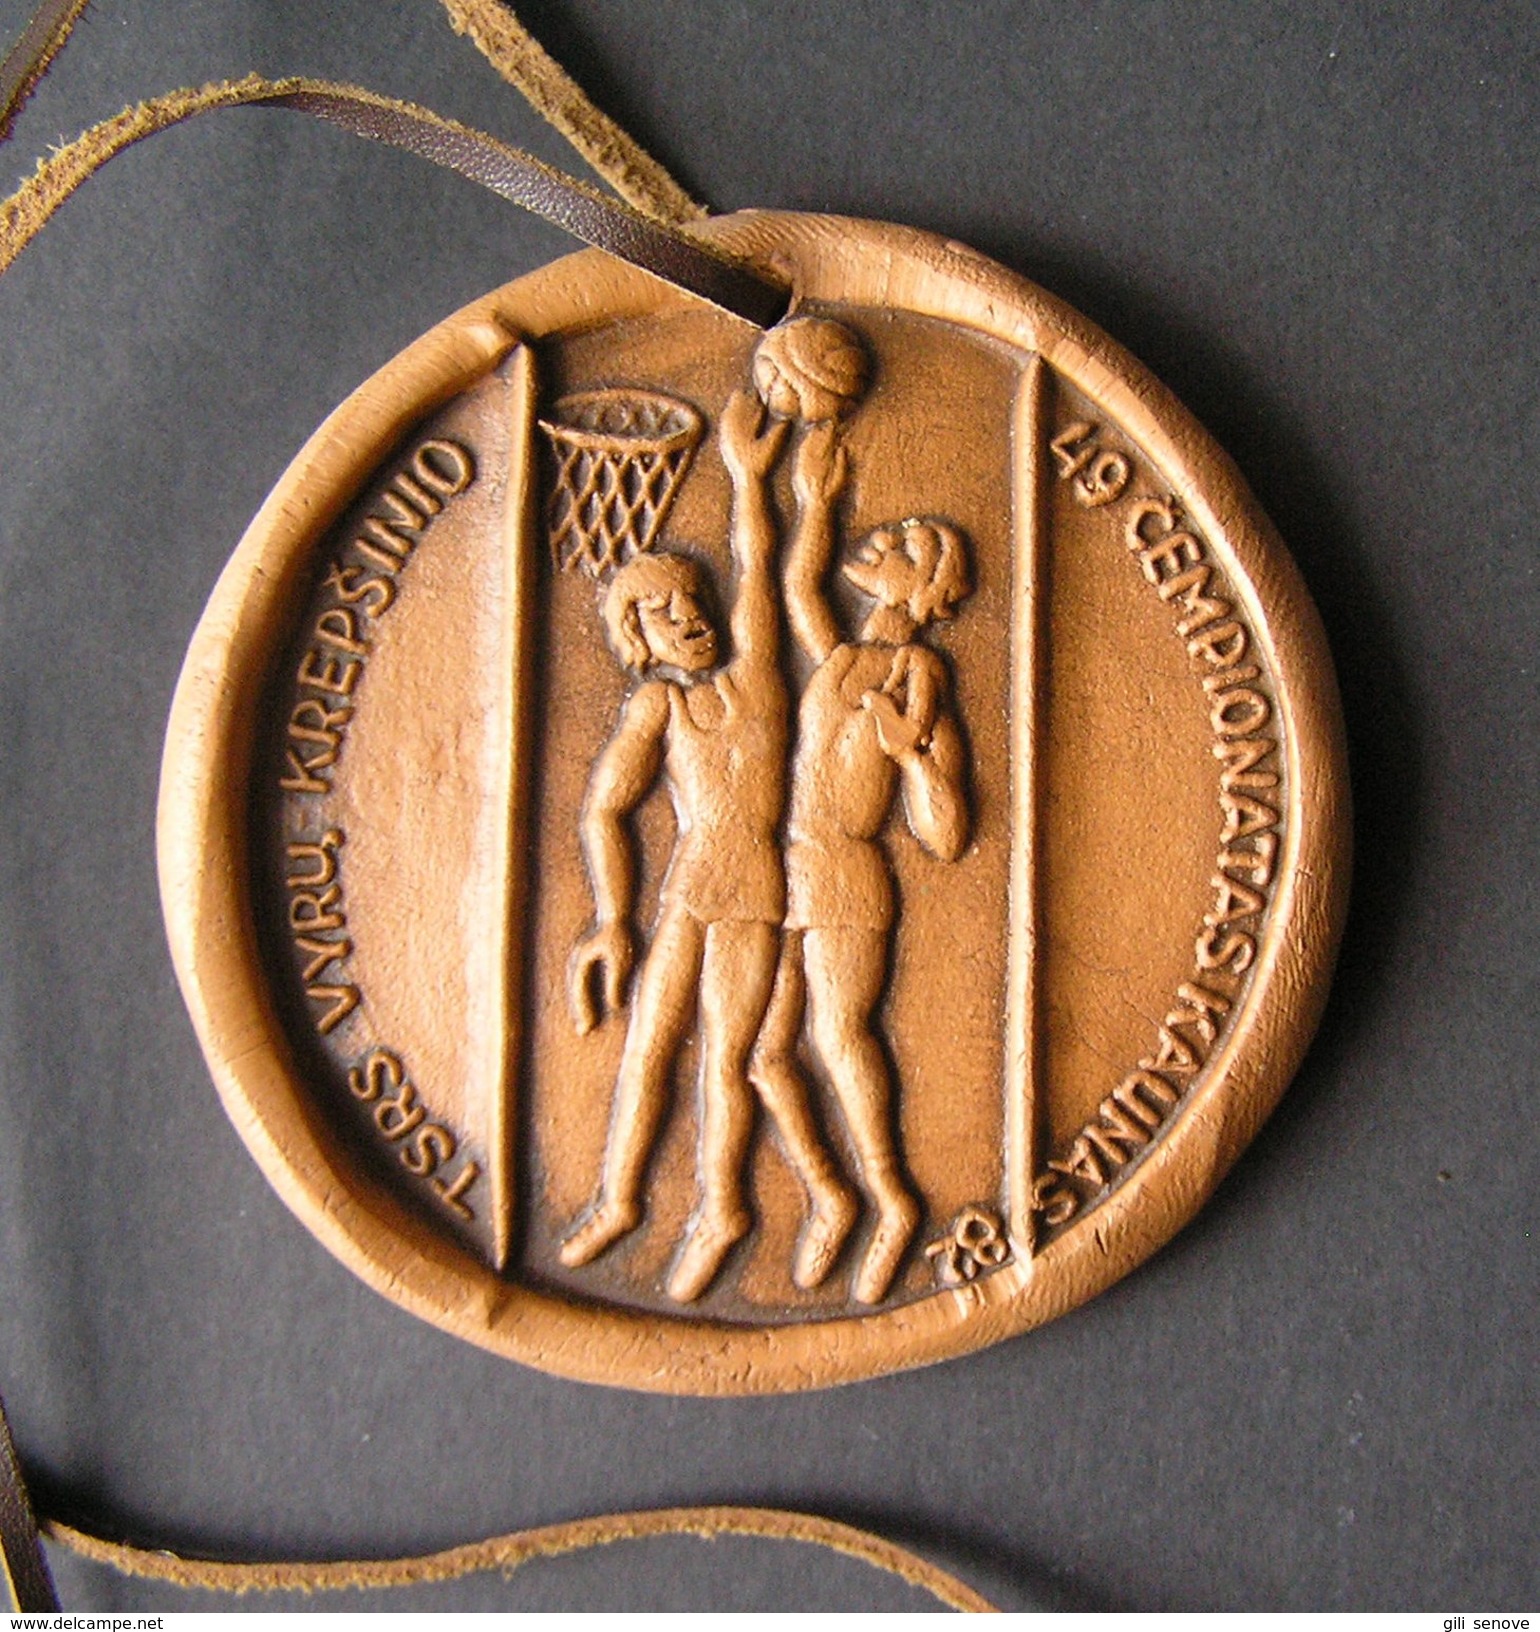 1982 Soviet Basketball Championship Finals Handmade Molar Medal - Uniformes, Recordatorios & Misc